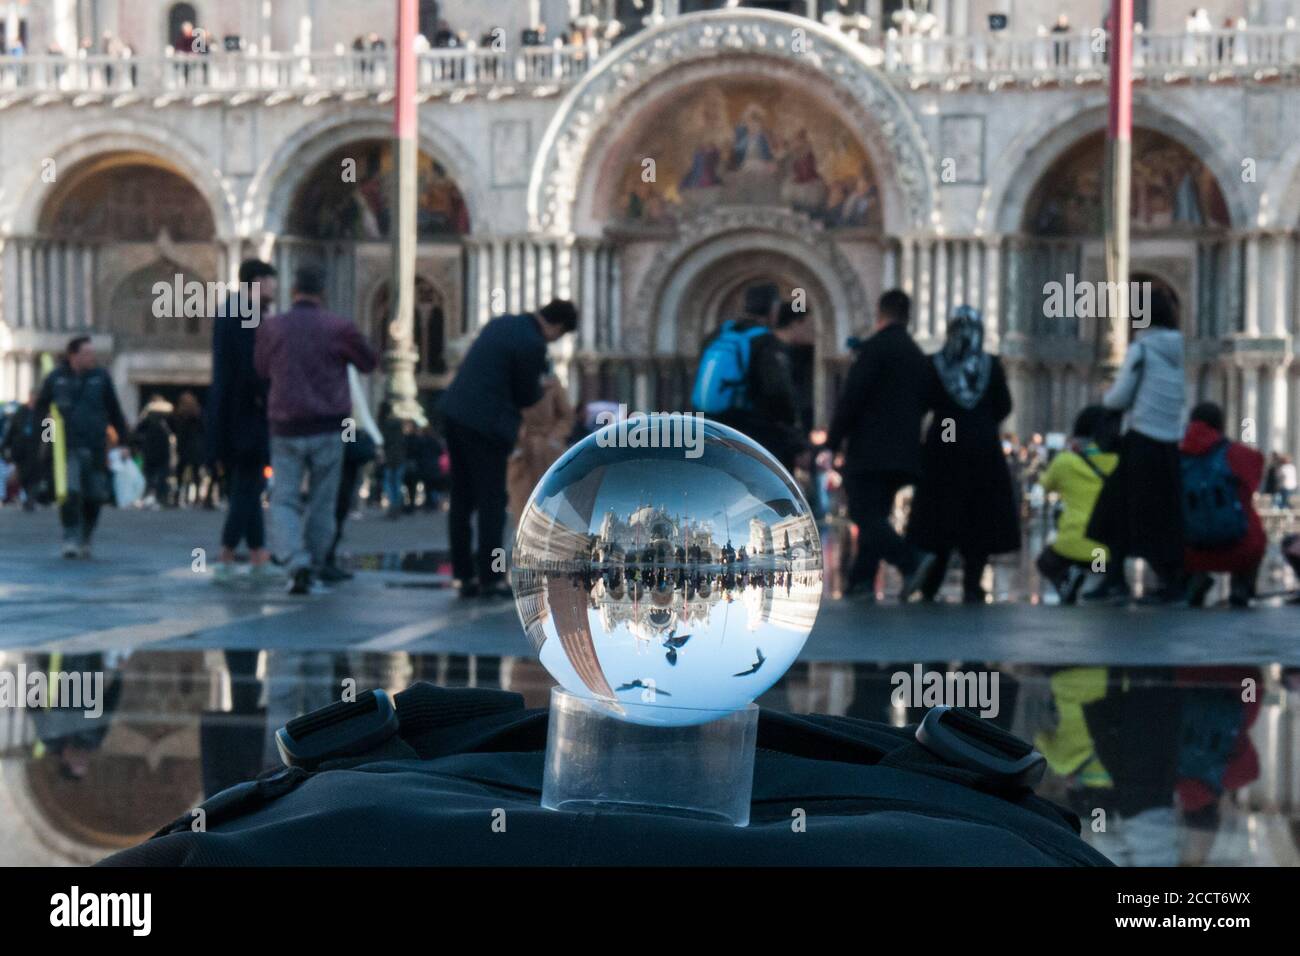 VENECIA, ITALIA - 20 DE NOVIEMBRE de 2017: La Iglesia de San Marco y una pieza de la Plaza de San Marco, vista a través de una esfera de vidrio Foto de stock